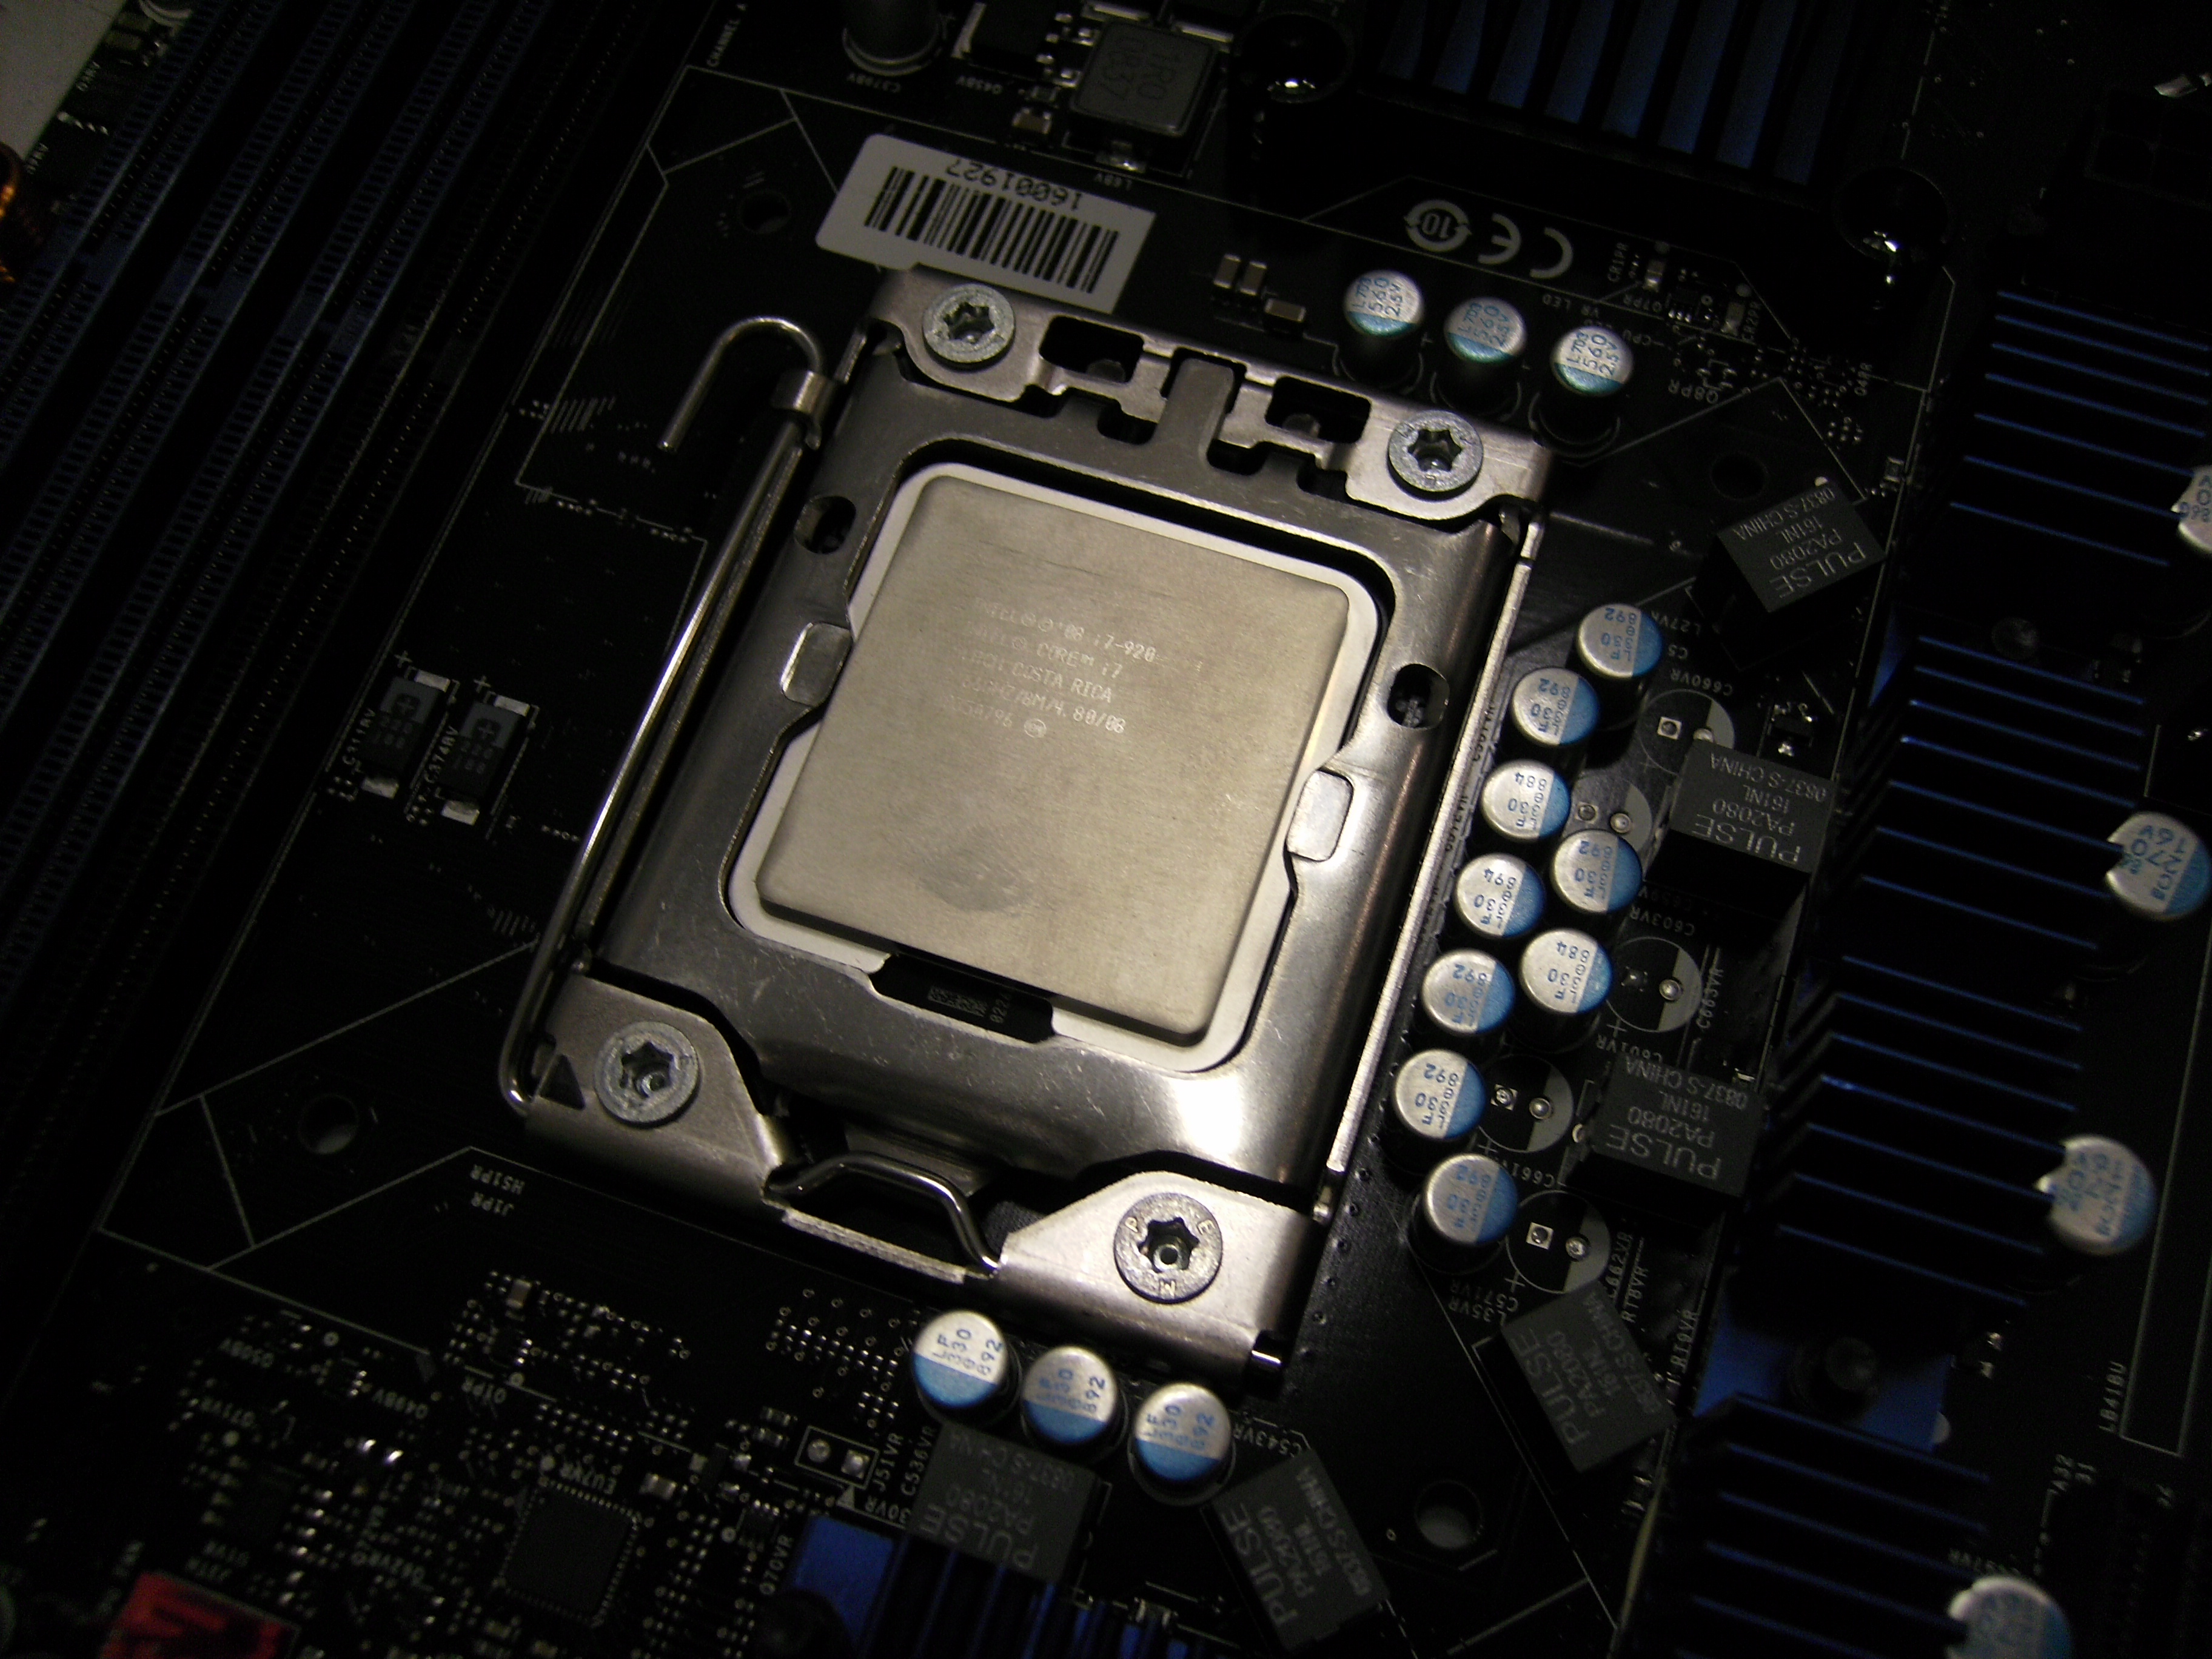 Intel I7 CPU